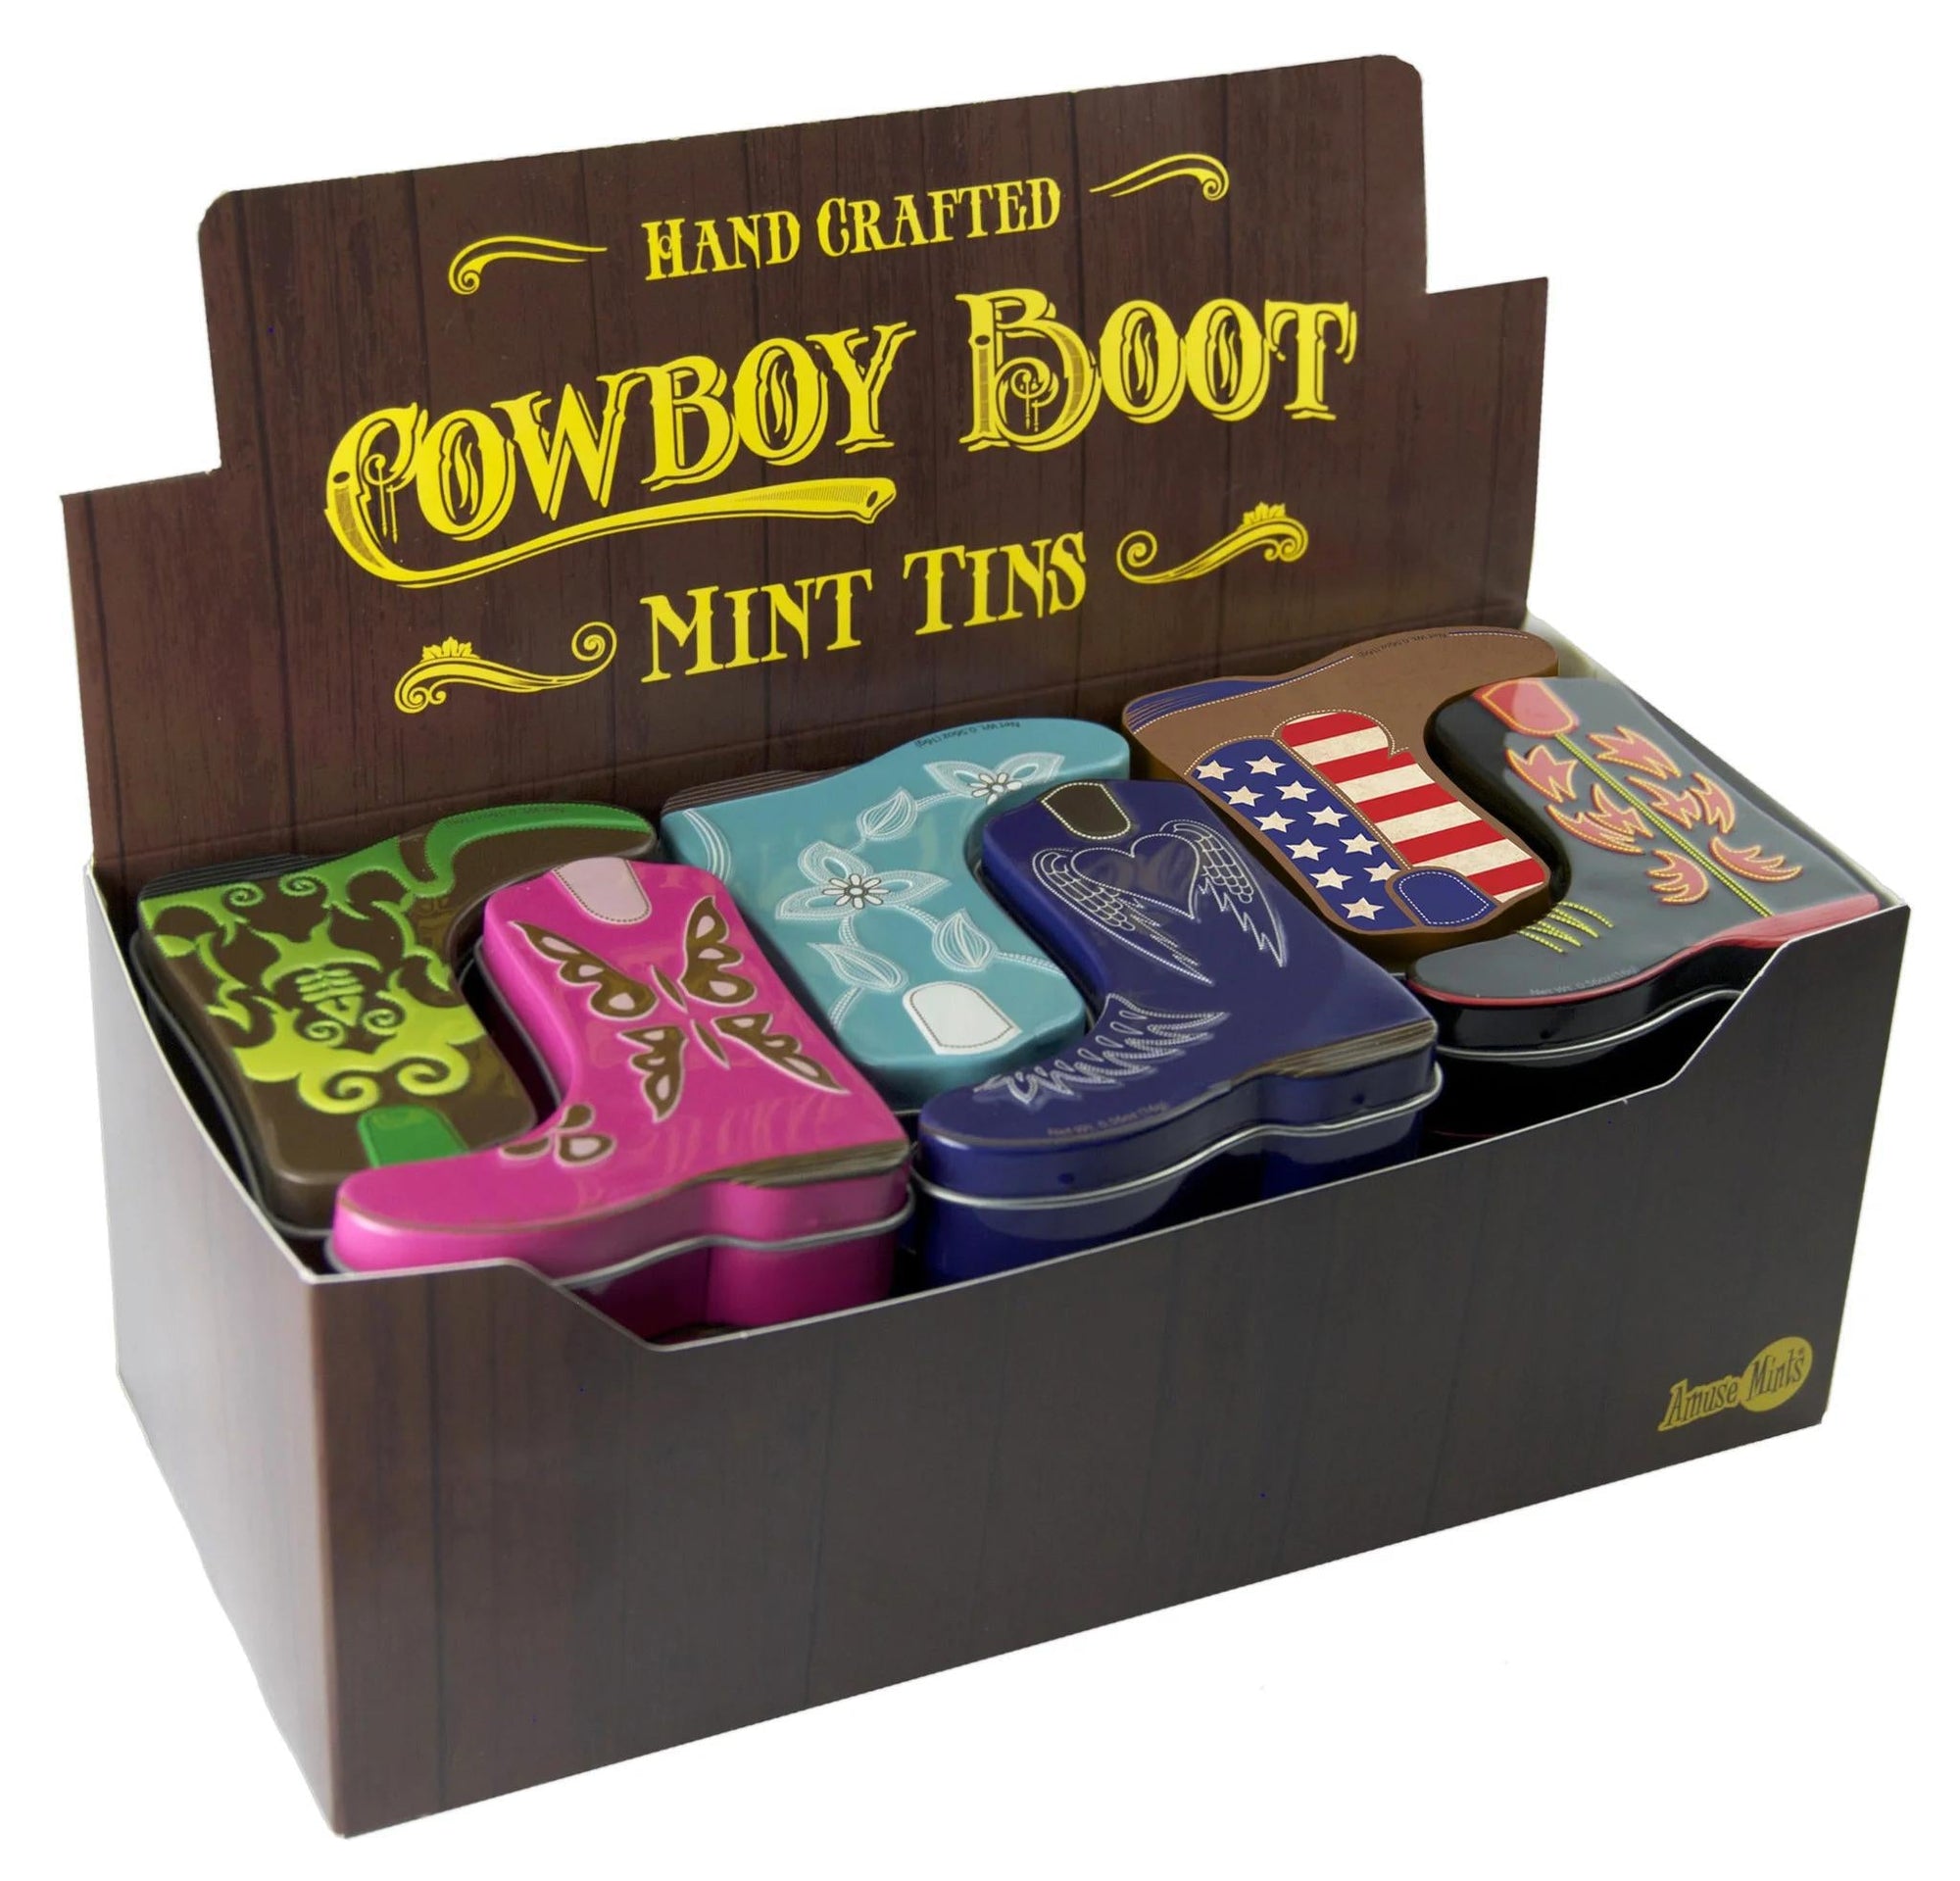 Cowboy Boot Mint Tin